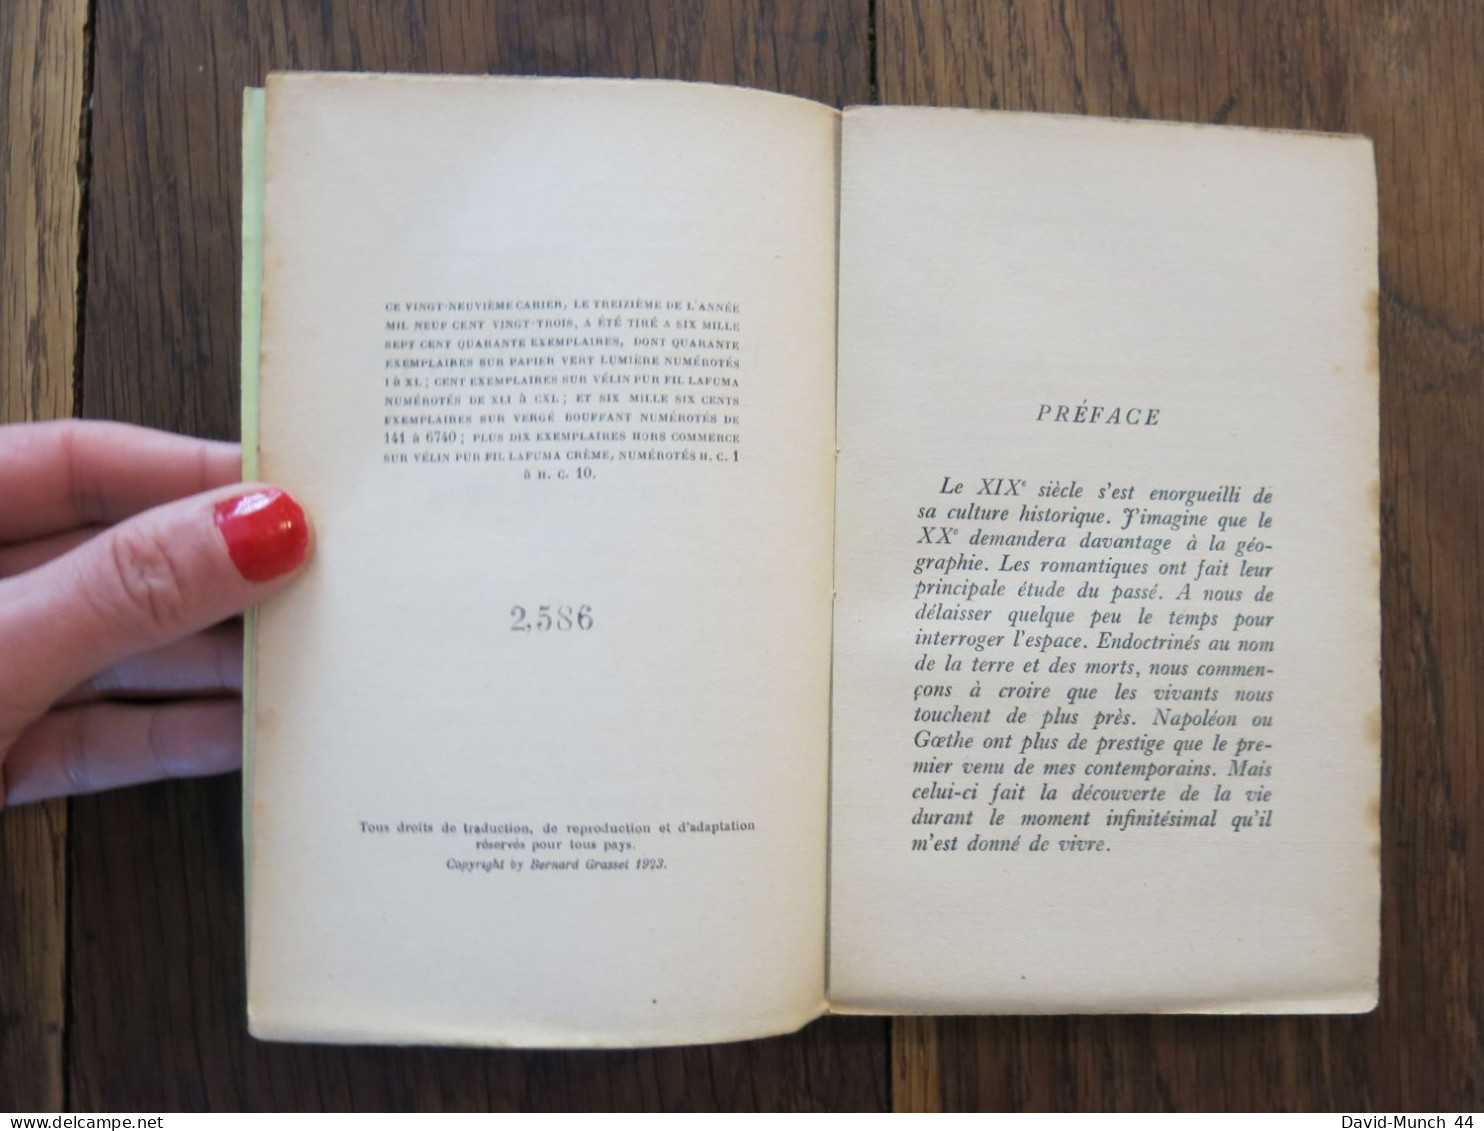 Dépaysements De Robert De Traz. Librairie Grasset, "Les Cahiers Verts"-29. 1923, Exemplaire Sur Vergé Bouffant Numéroté - 1901-1940